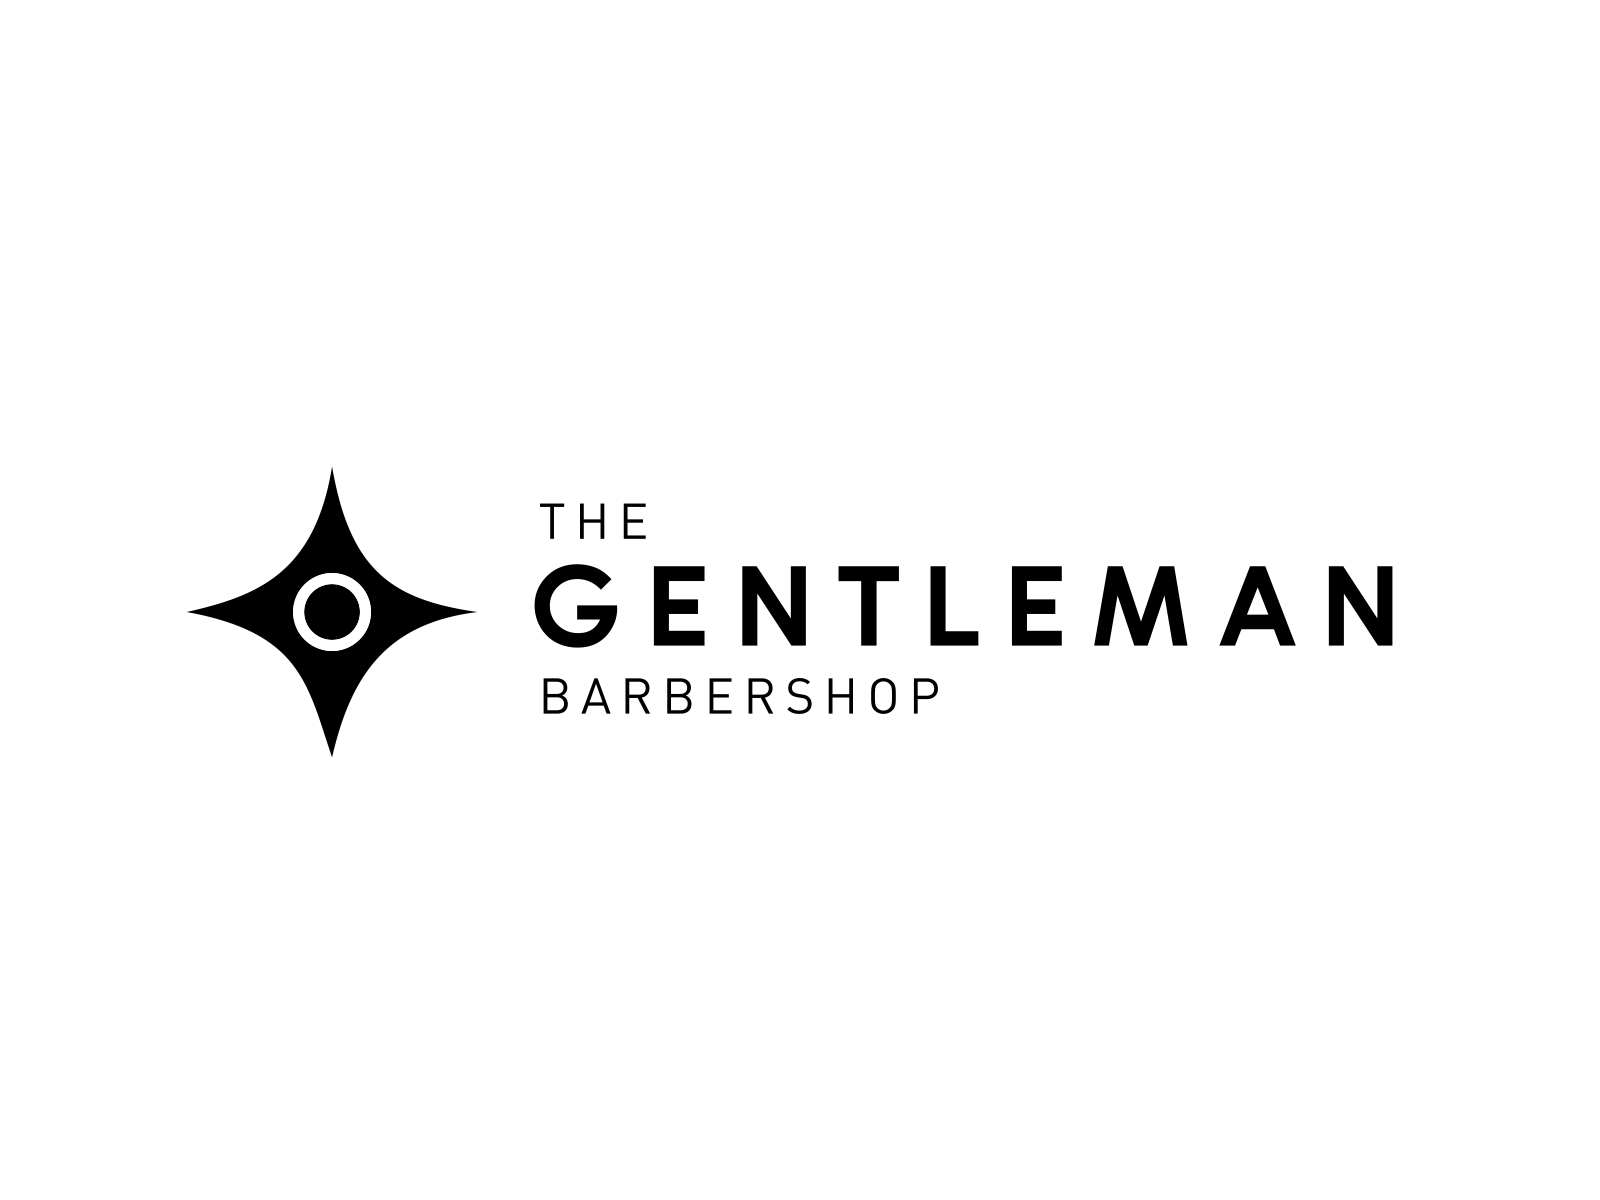 Gentleman barbershop